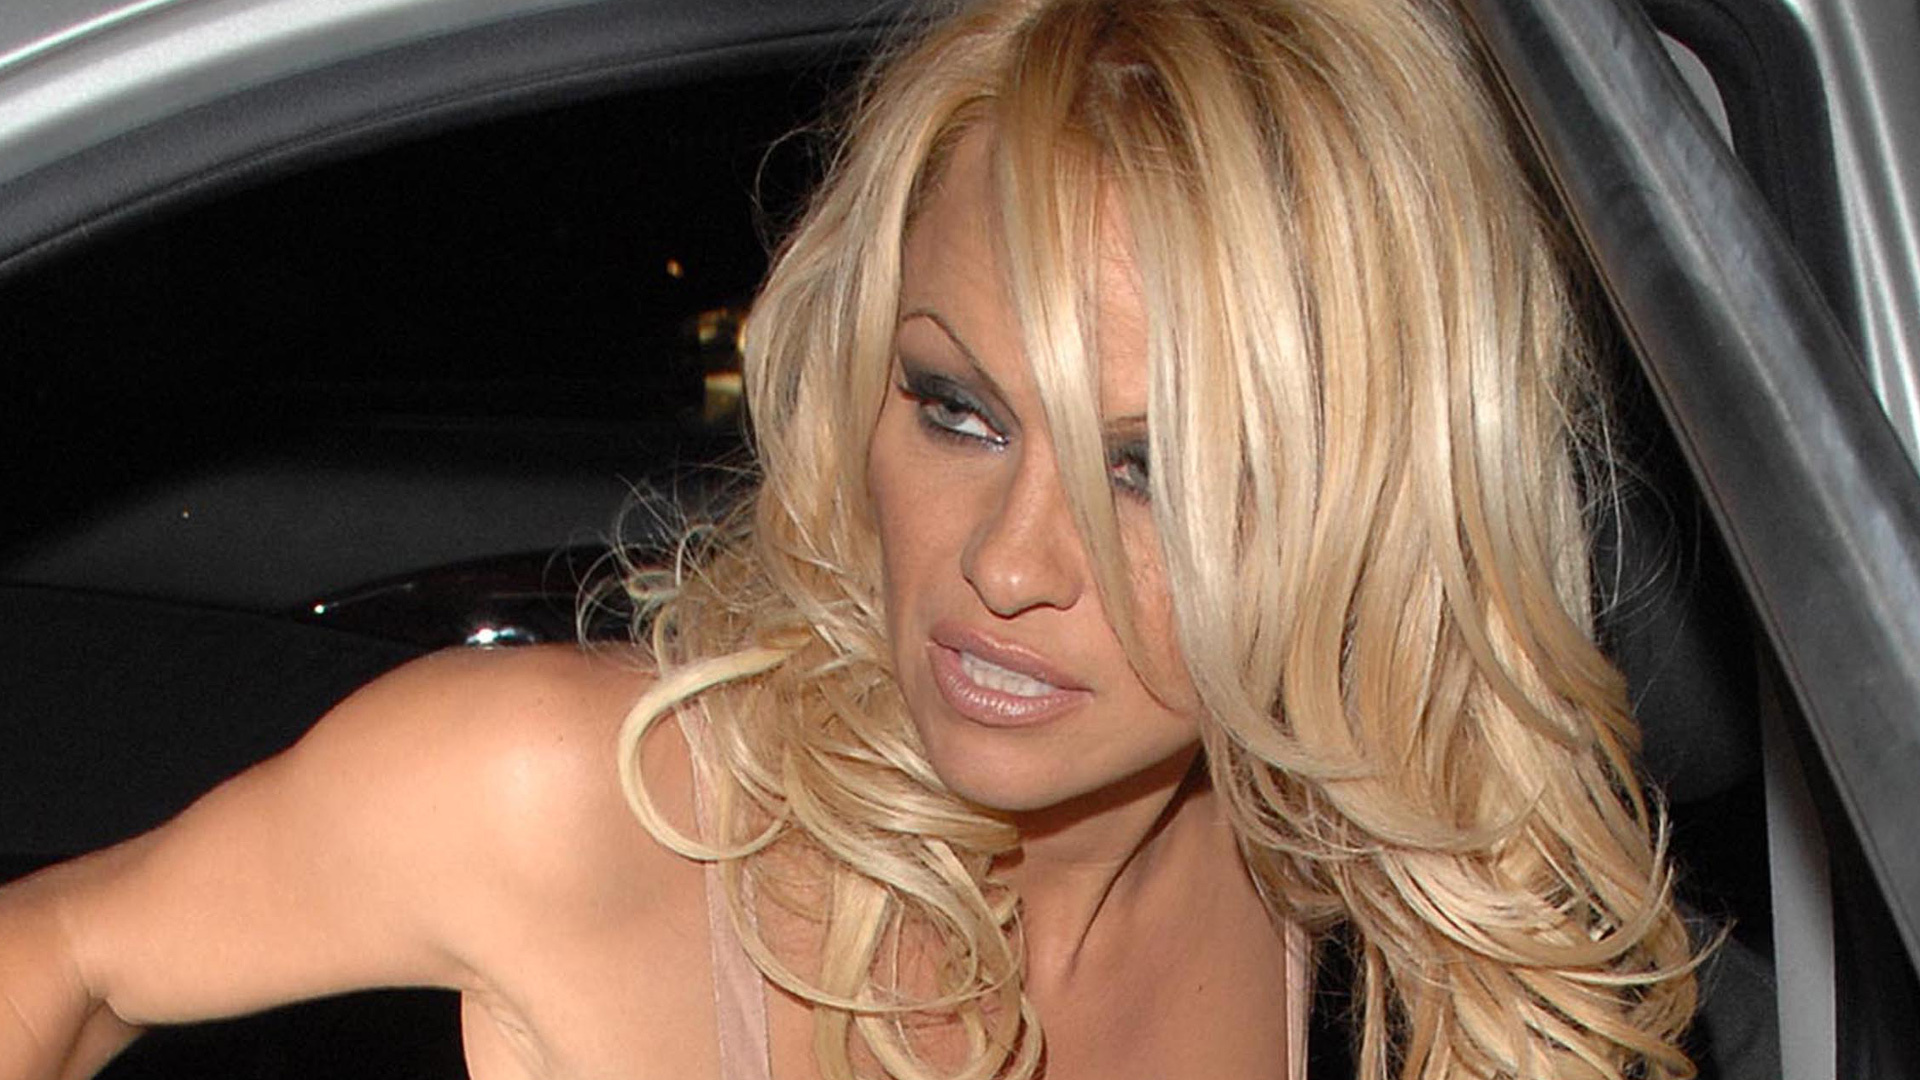 Pamela Anderson el vídeo porno casero fue su mayor pesadilla foto